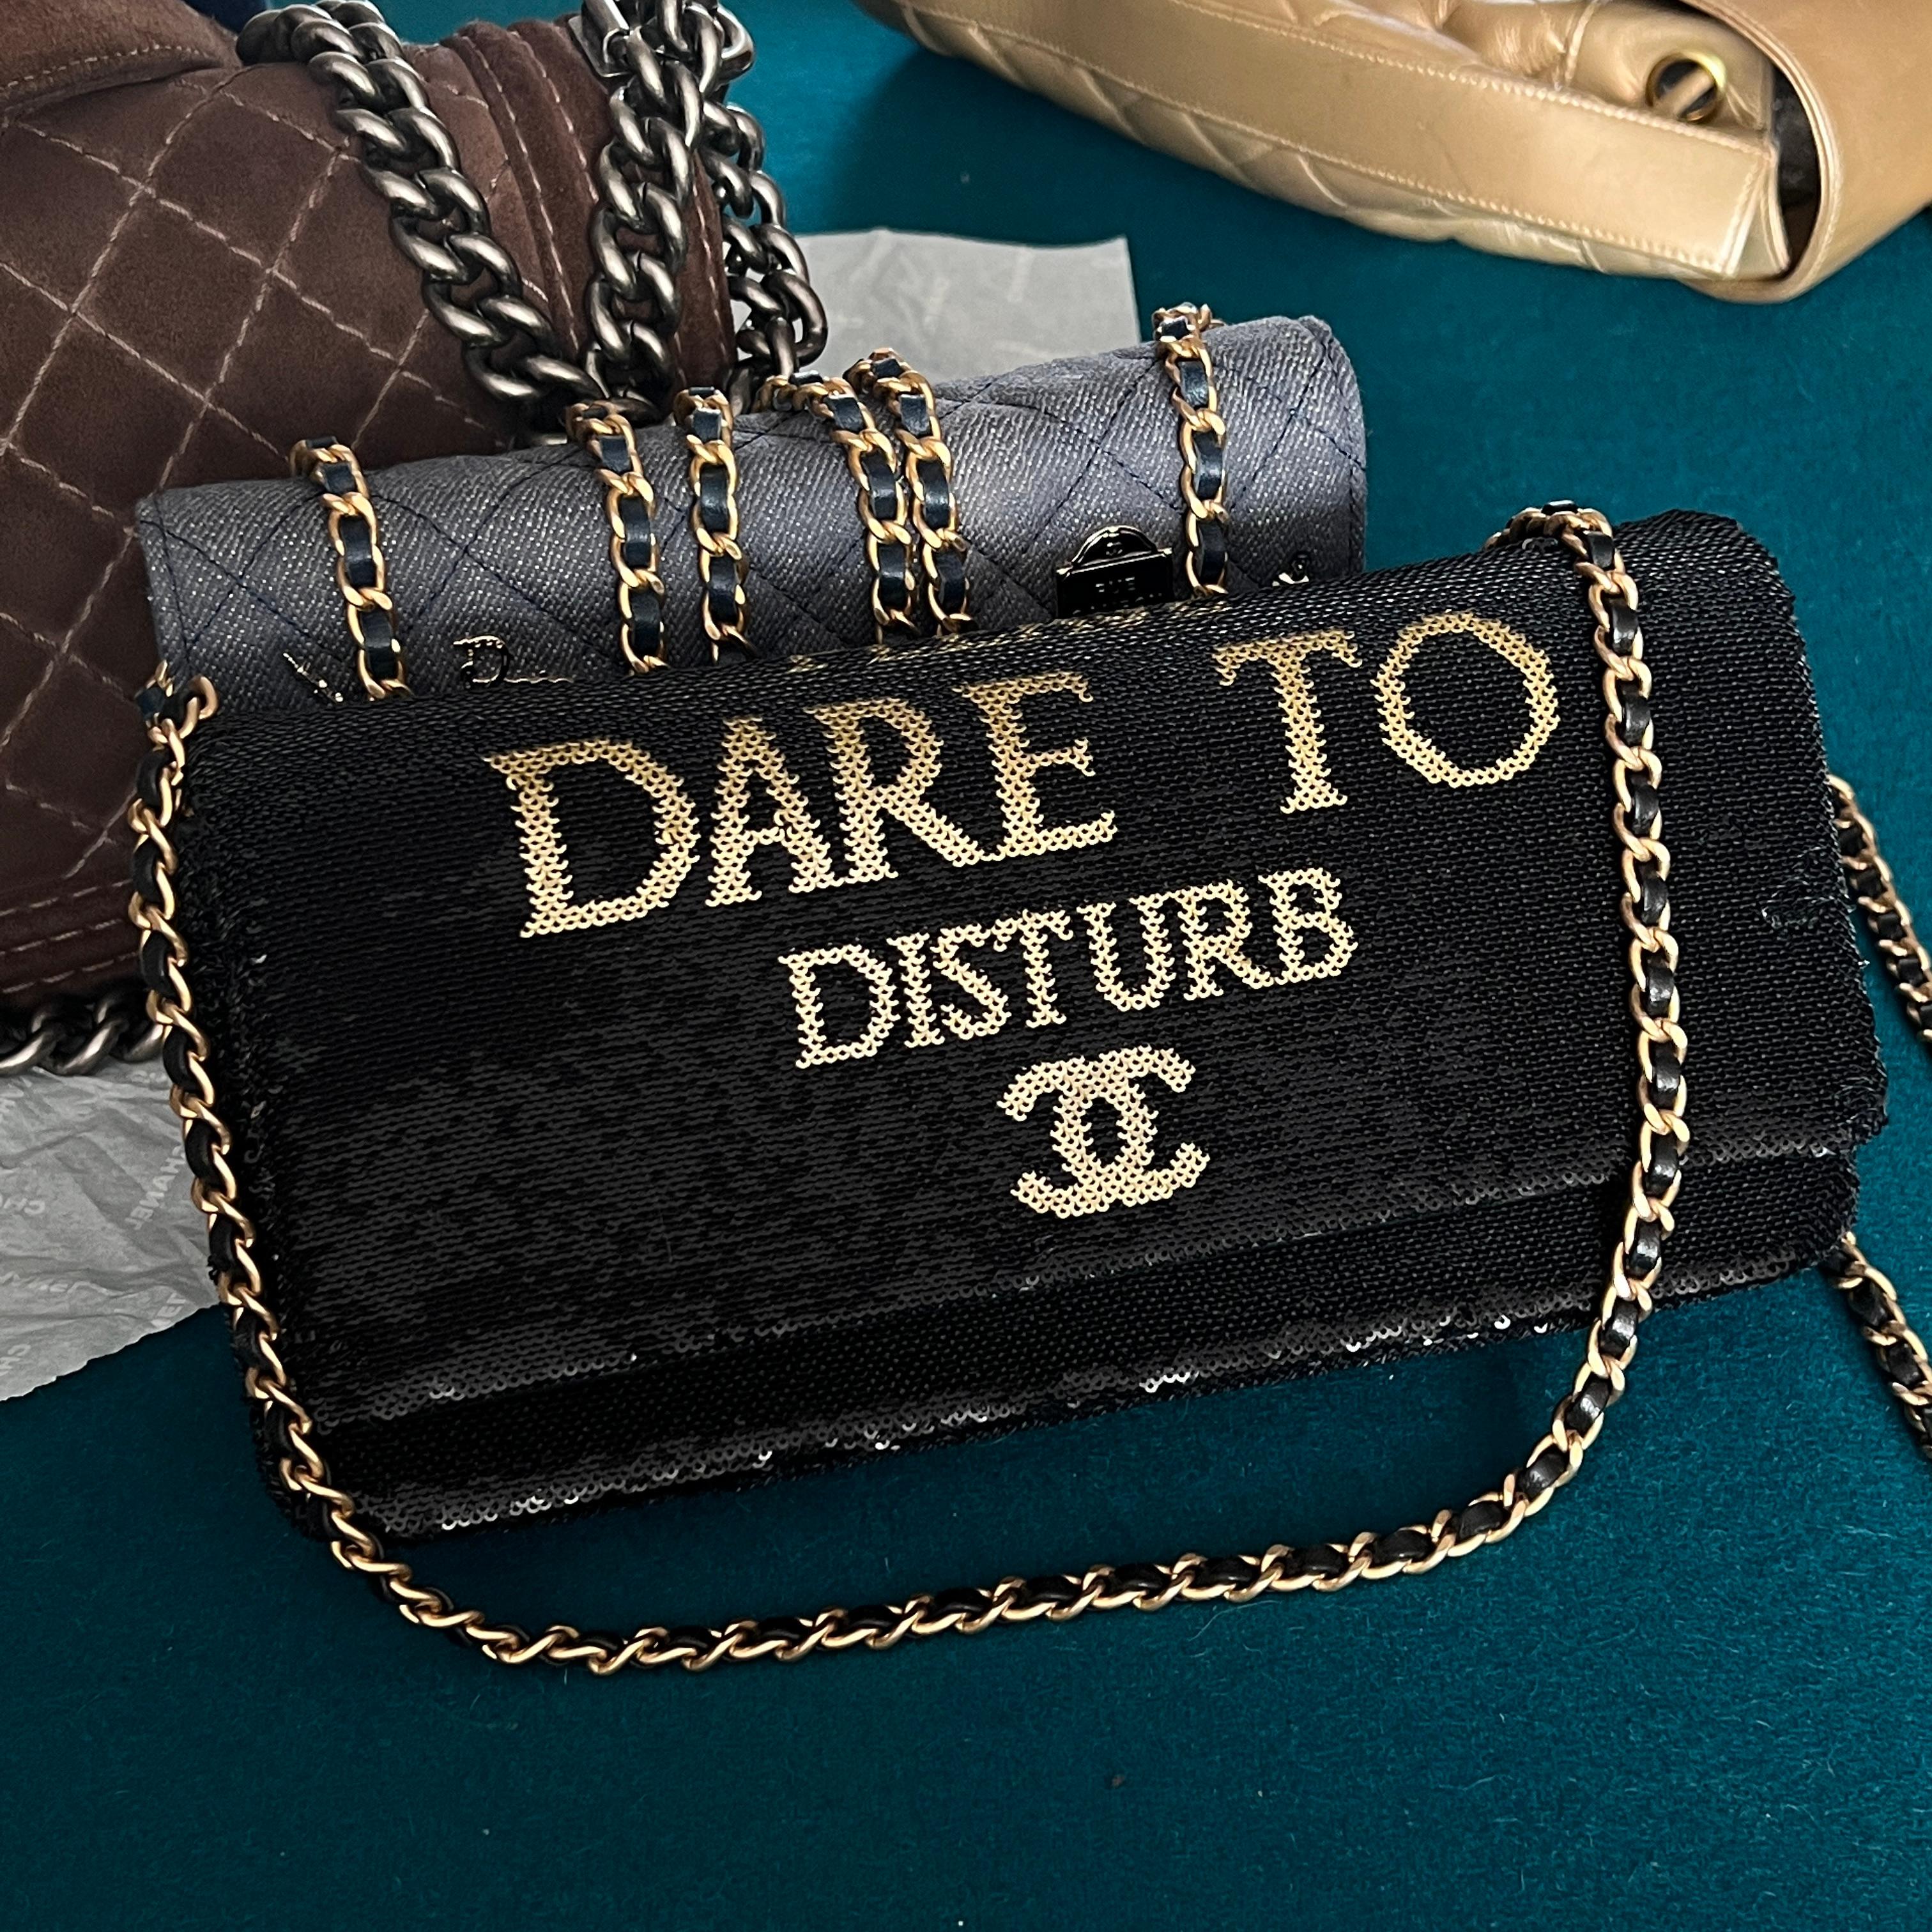 Chanel Super Rare Dare To Disturb Sequin Flap Bag For Sale 2